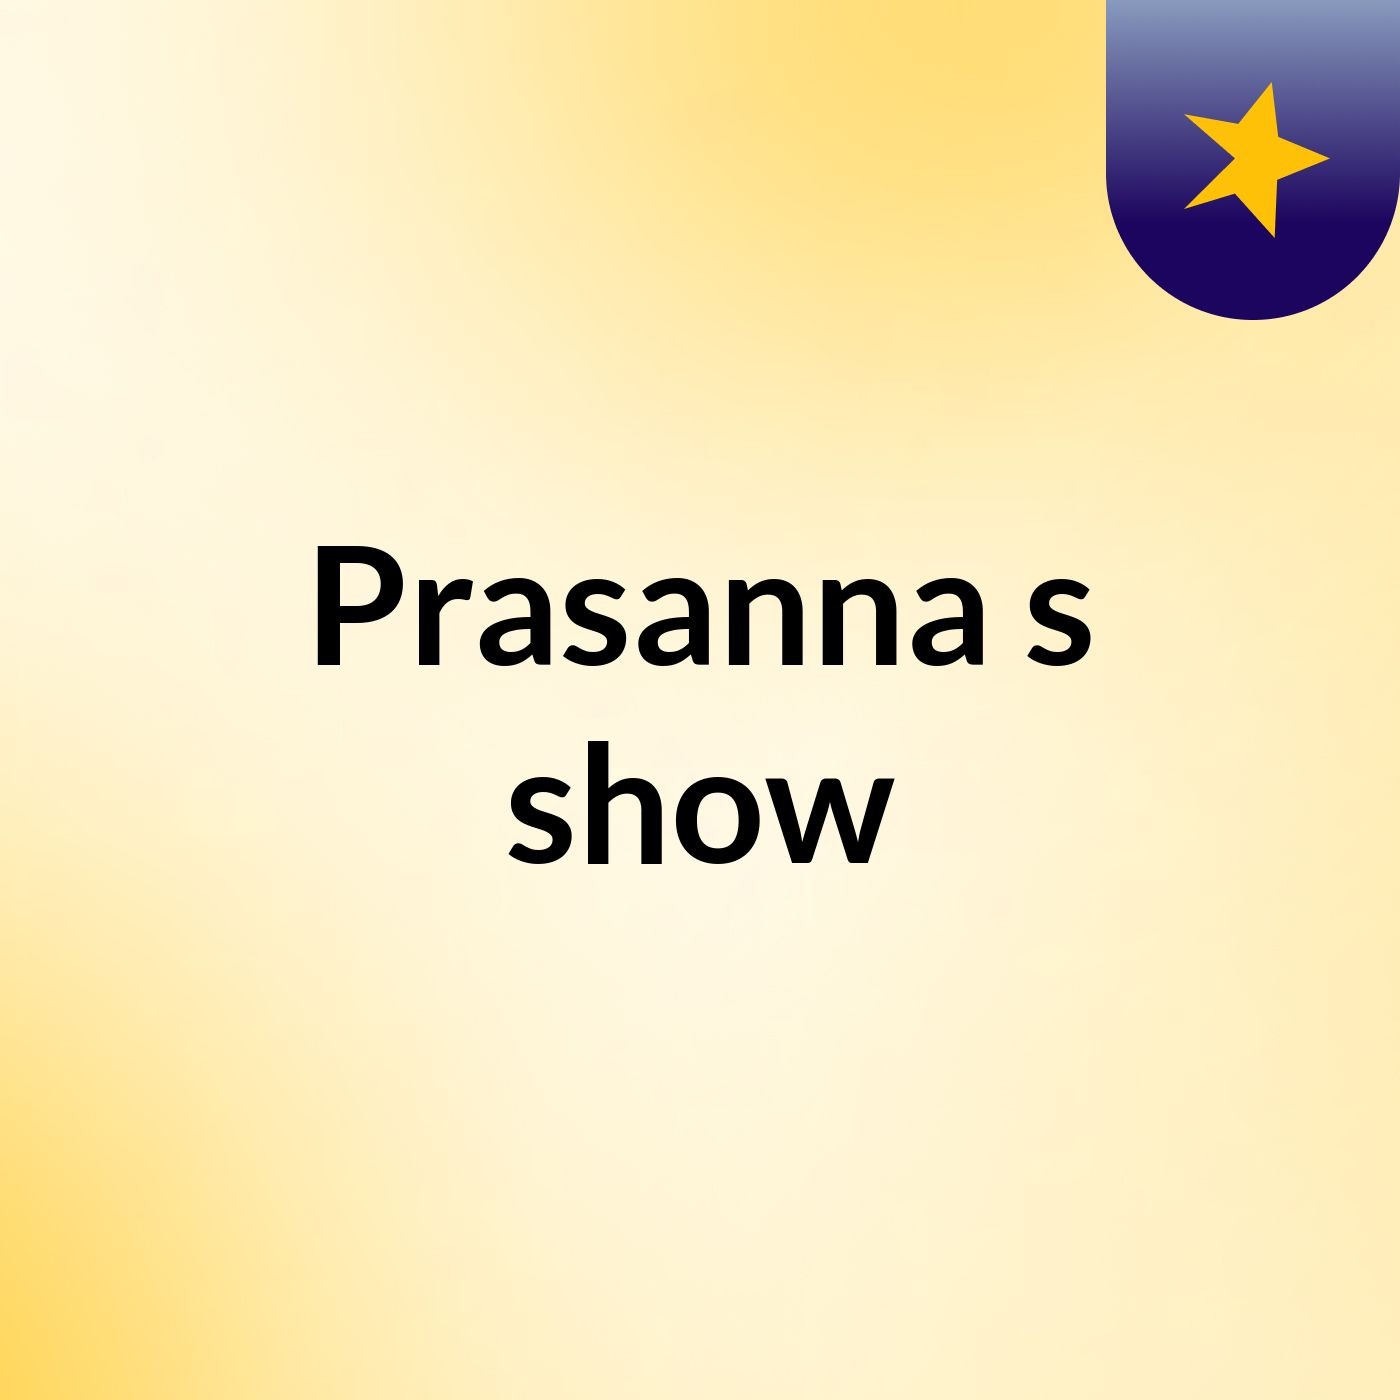 Prasanna's show